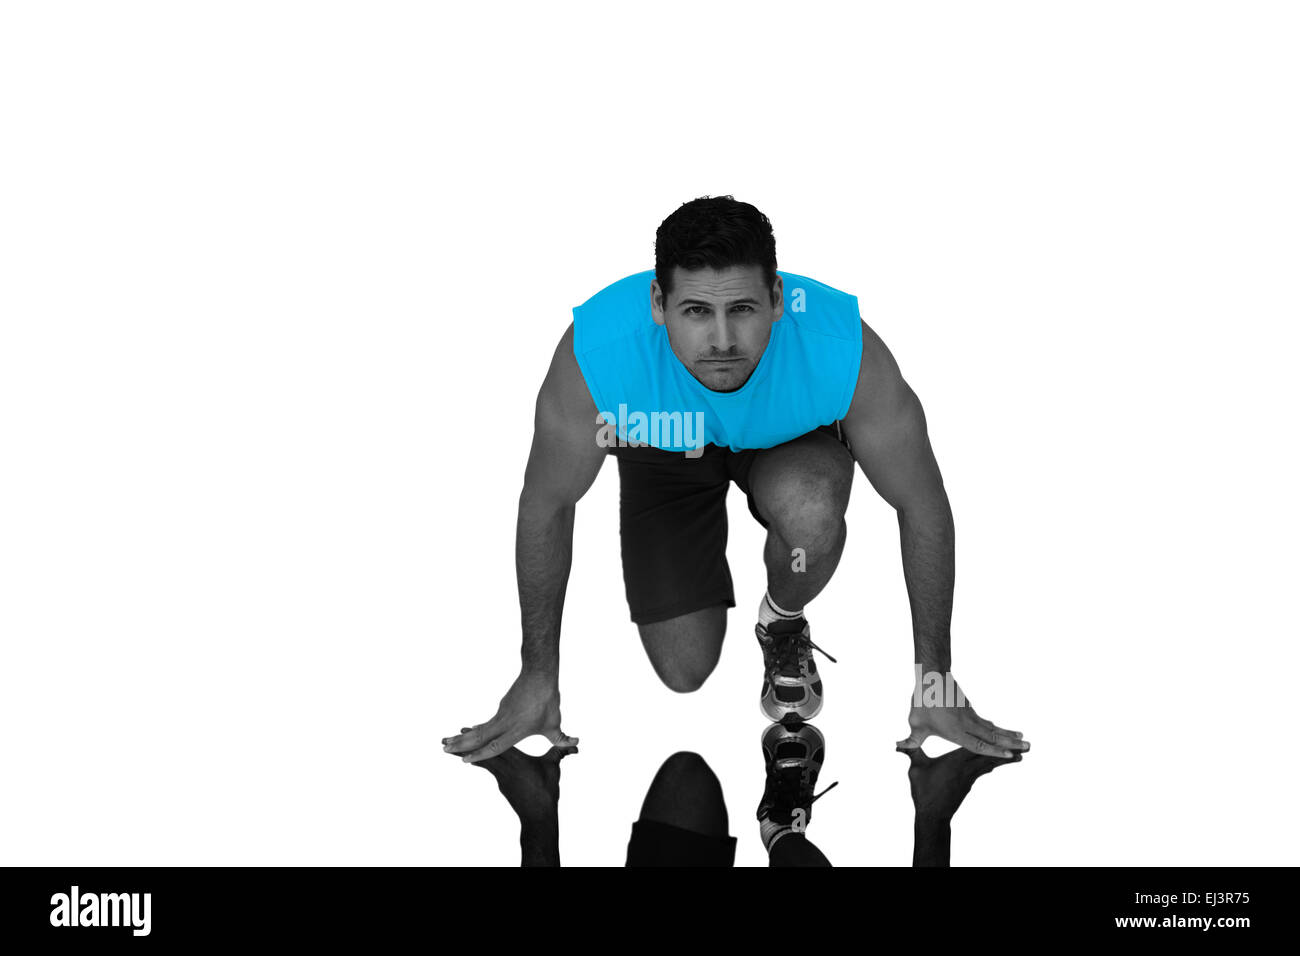 Zusammengesetztes Bild Porträt eines jungen sportlichen Mannes im laufenden Haltung Stockfoto